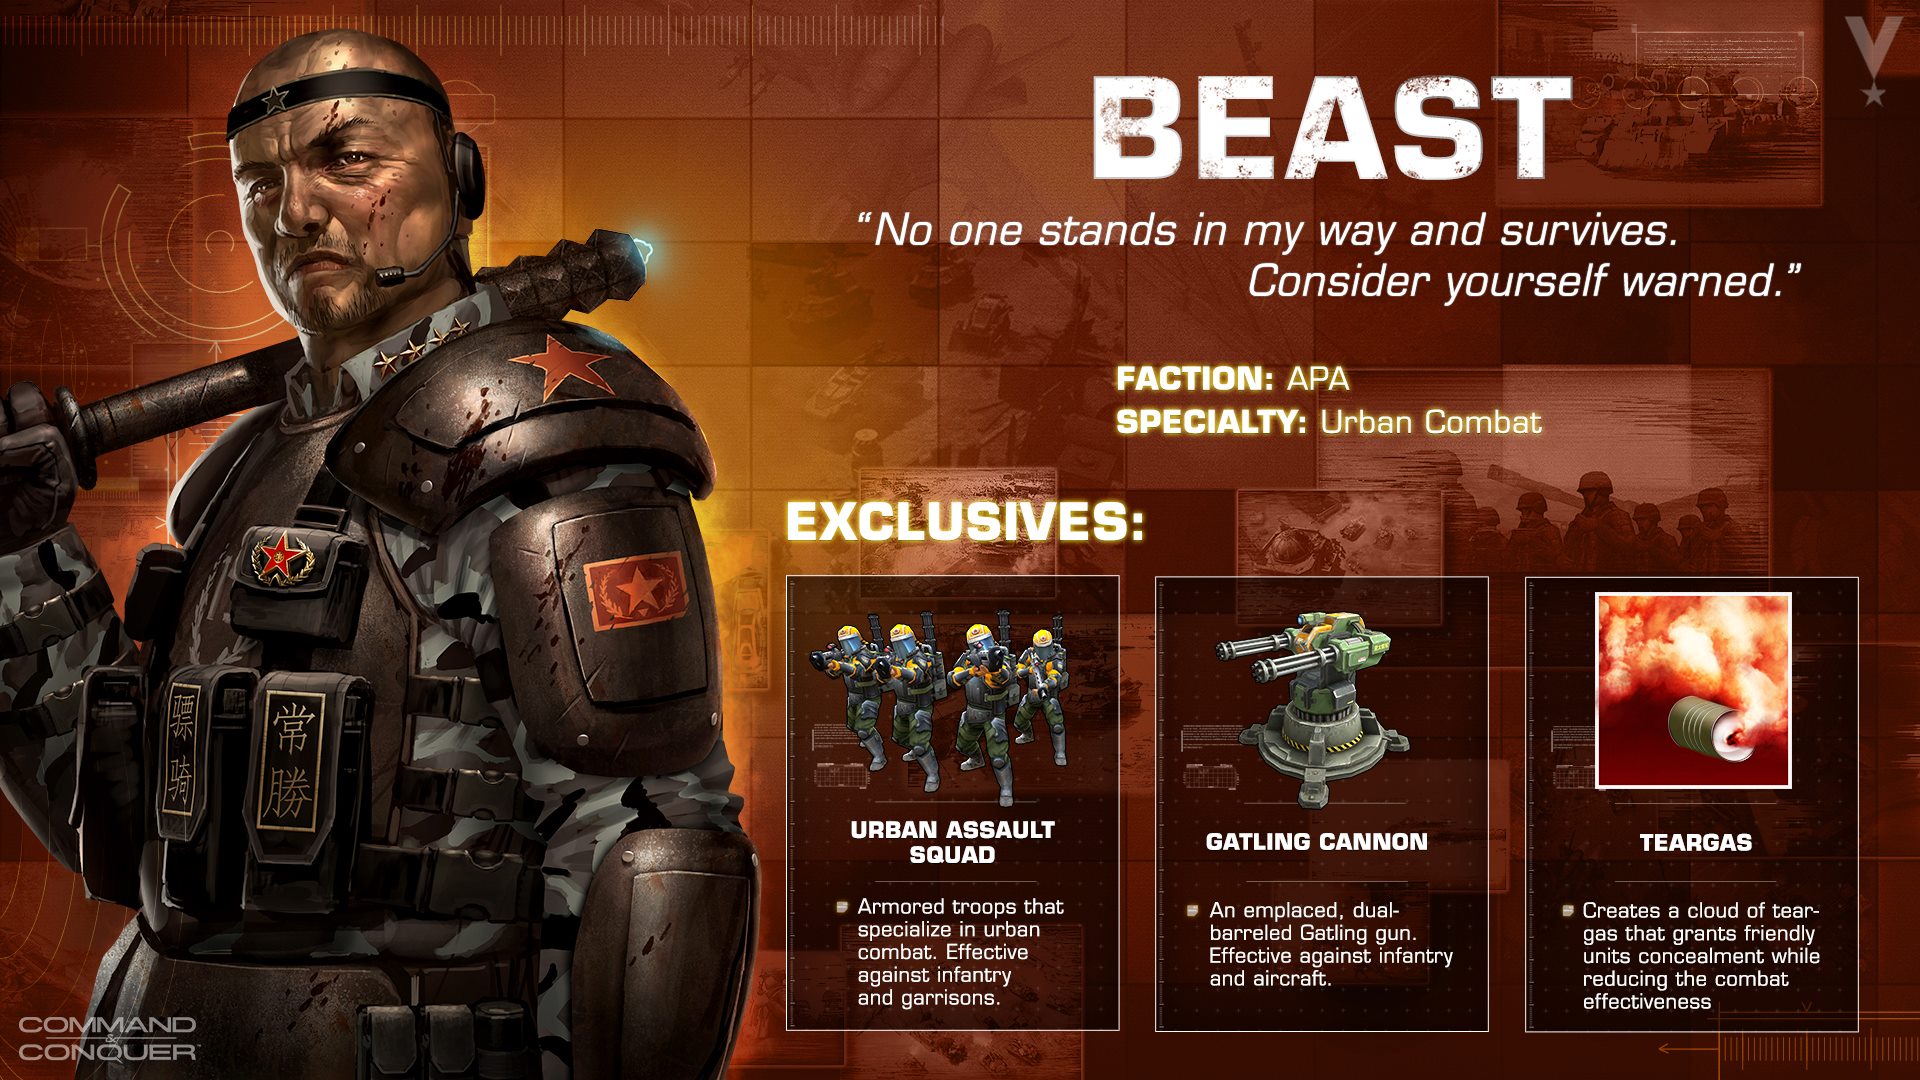 Beast - der Urban Combat General der APA!